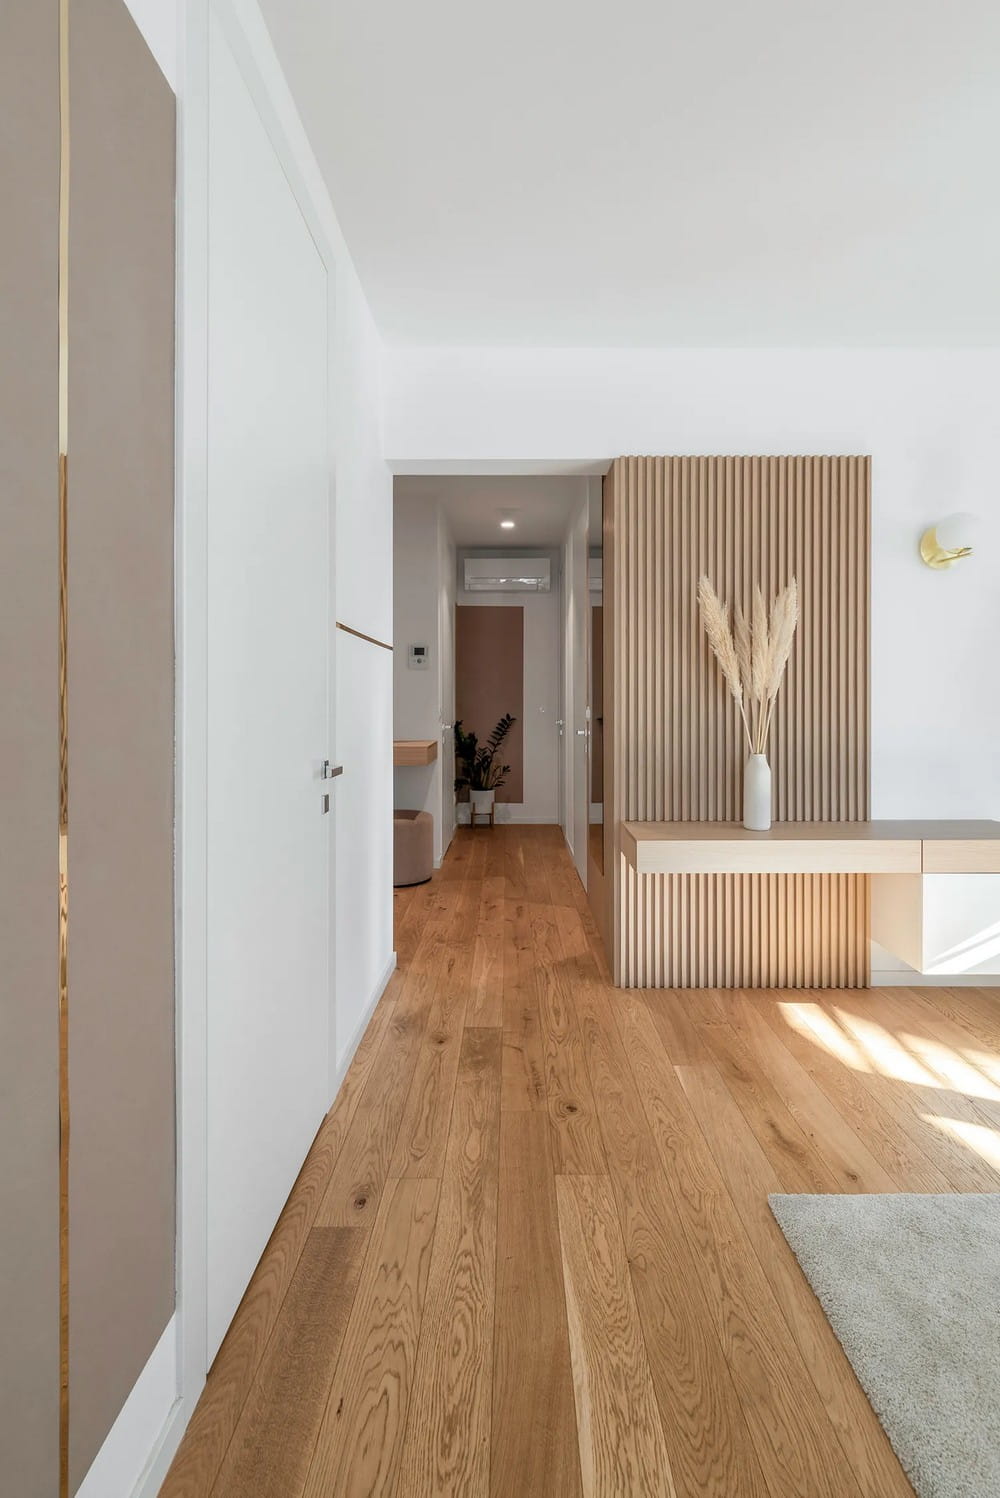 Ljubljana Apartment / Idealists Studio